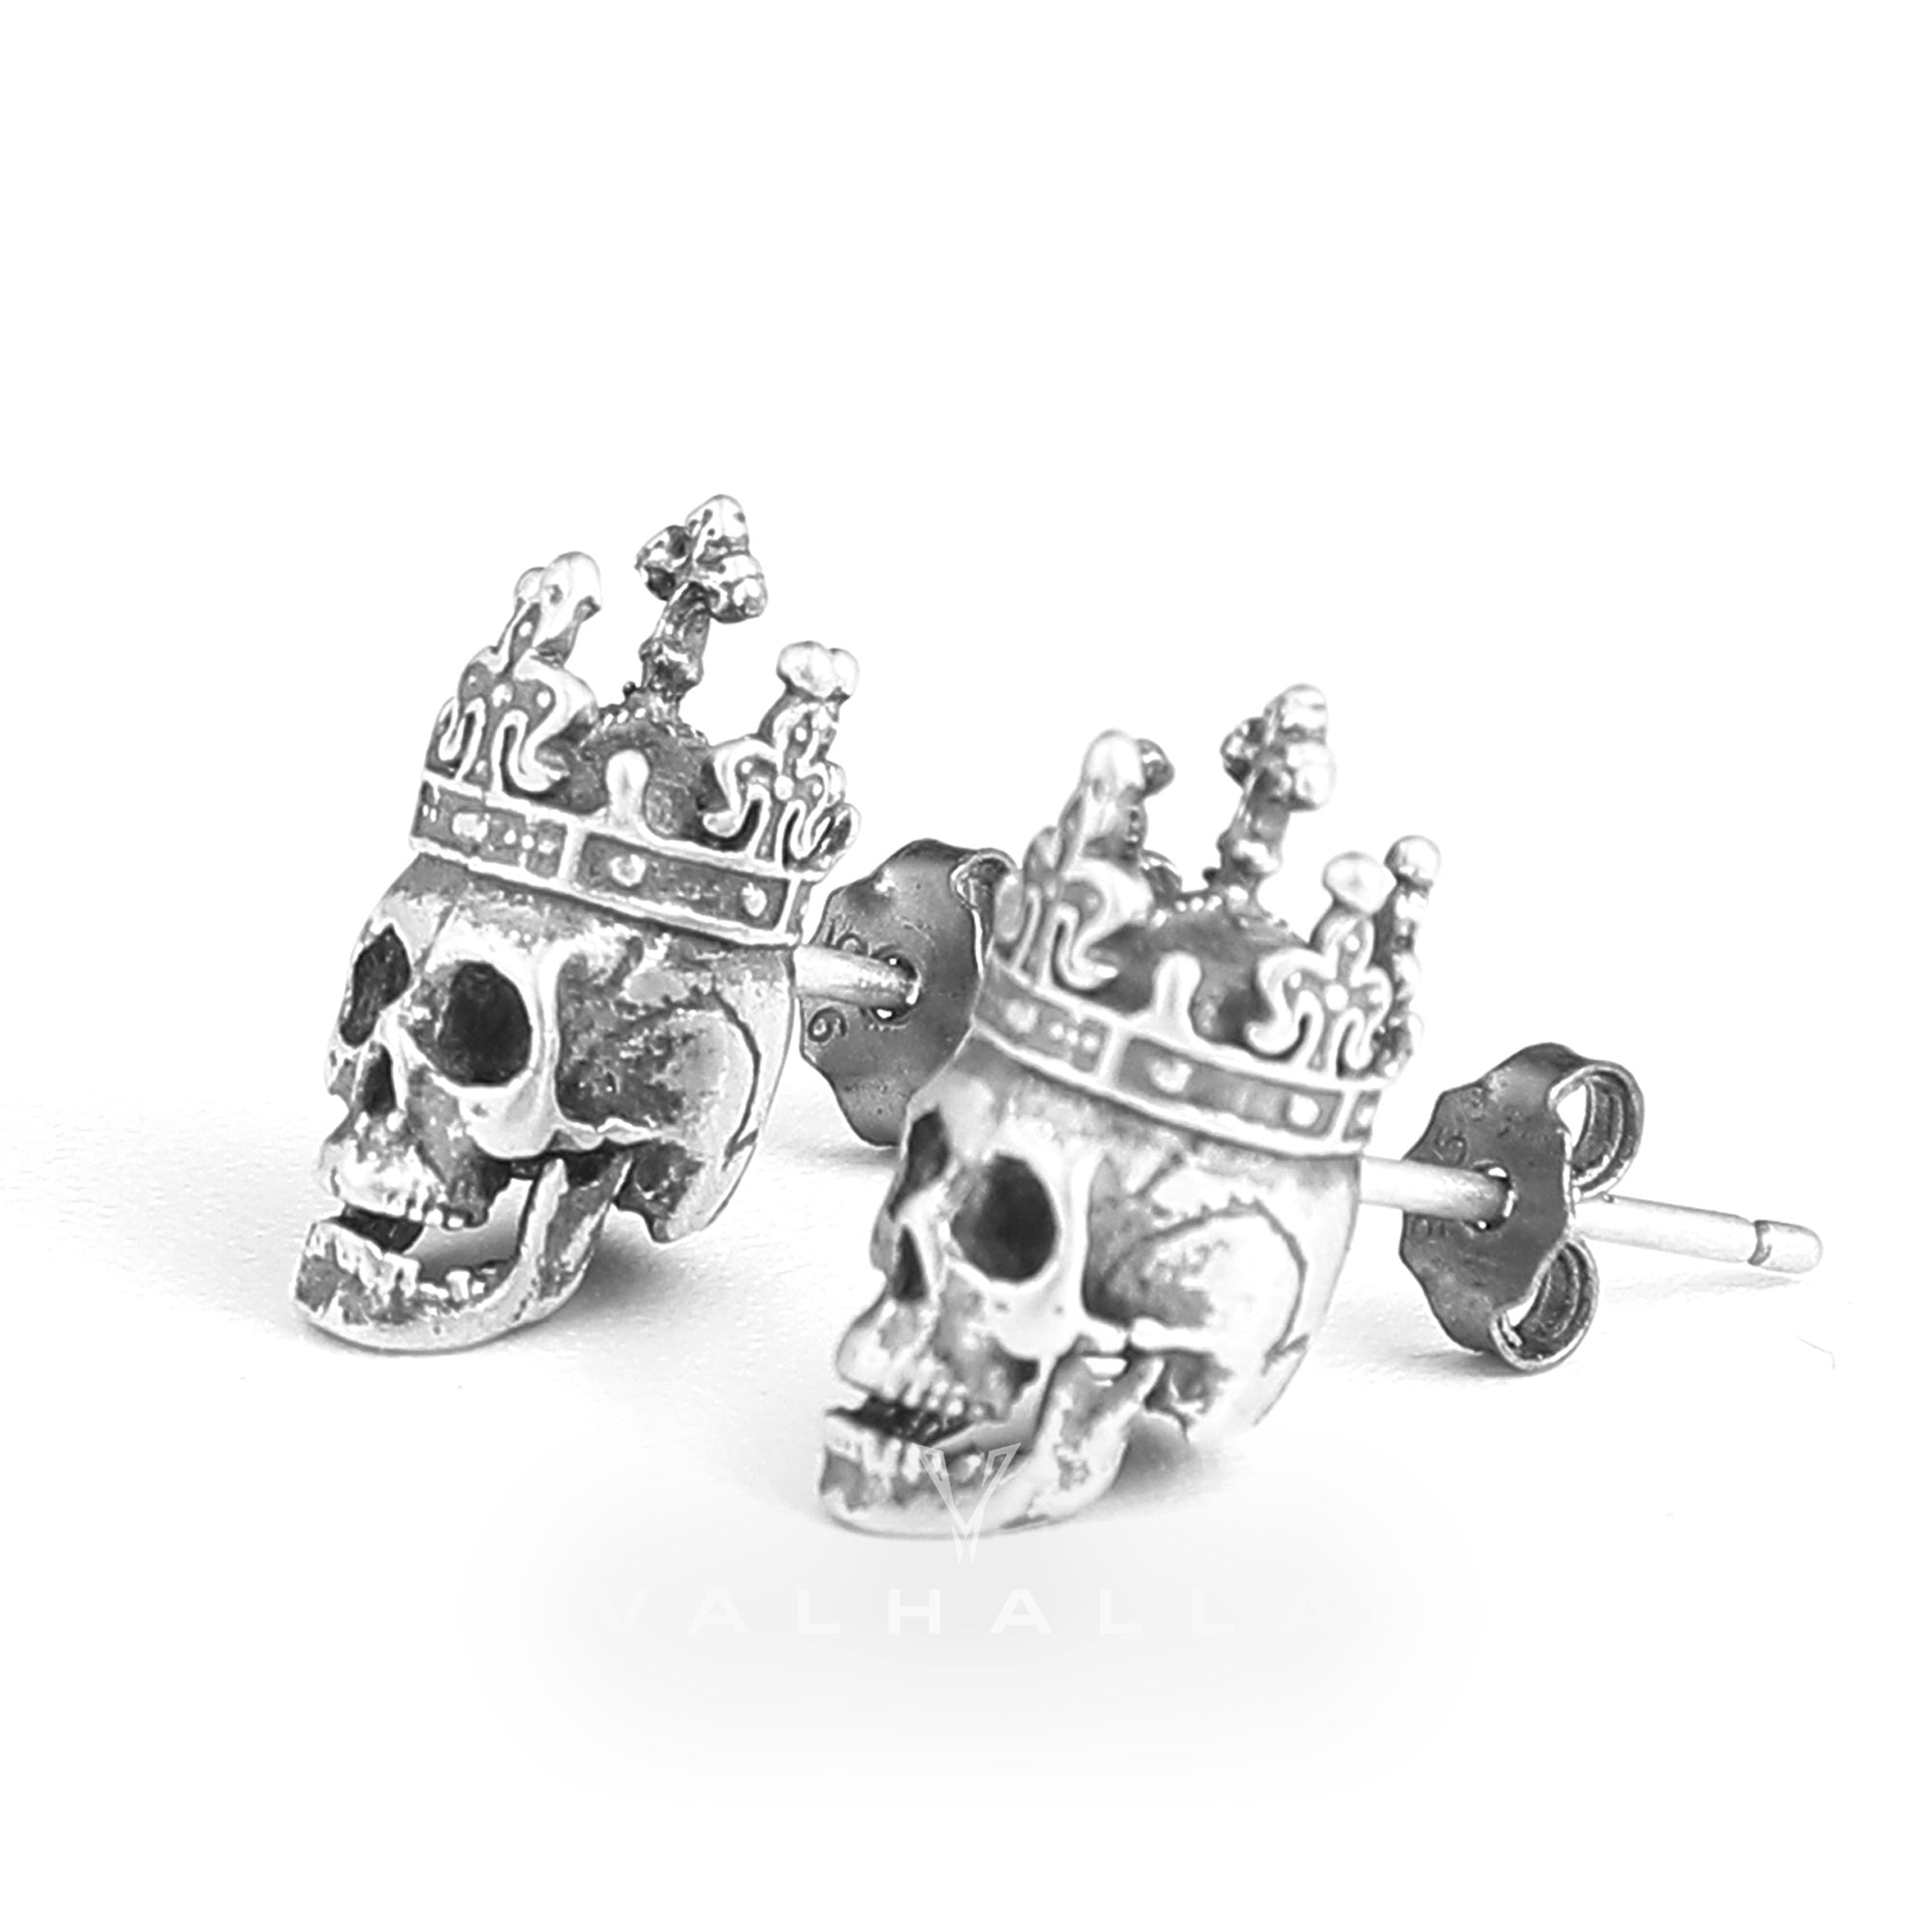 Skull King Crown Stud Earrings